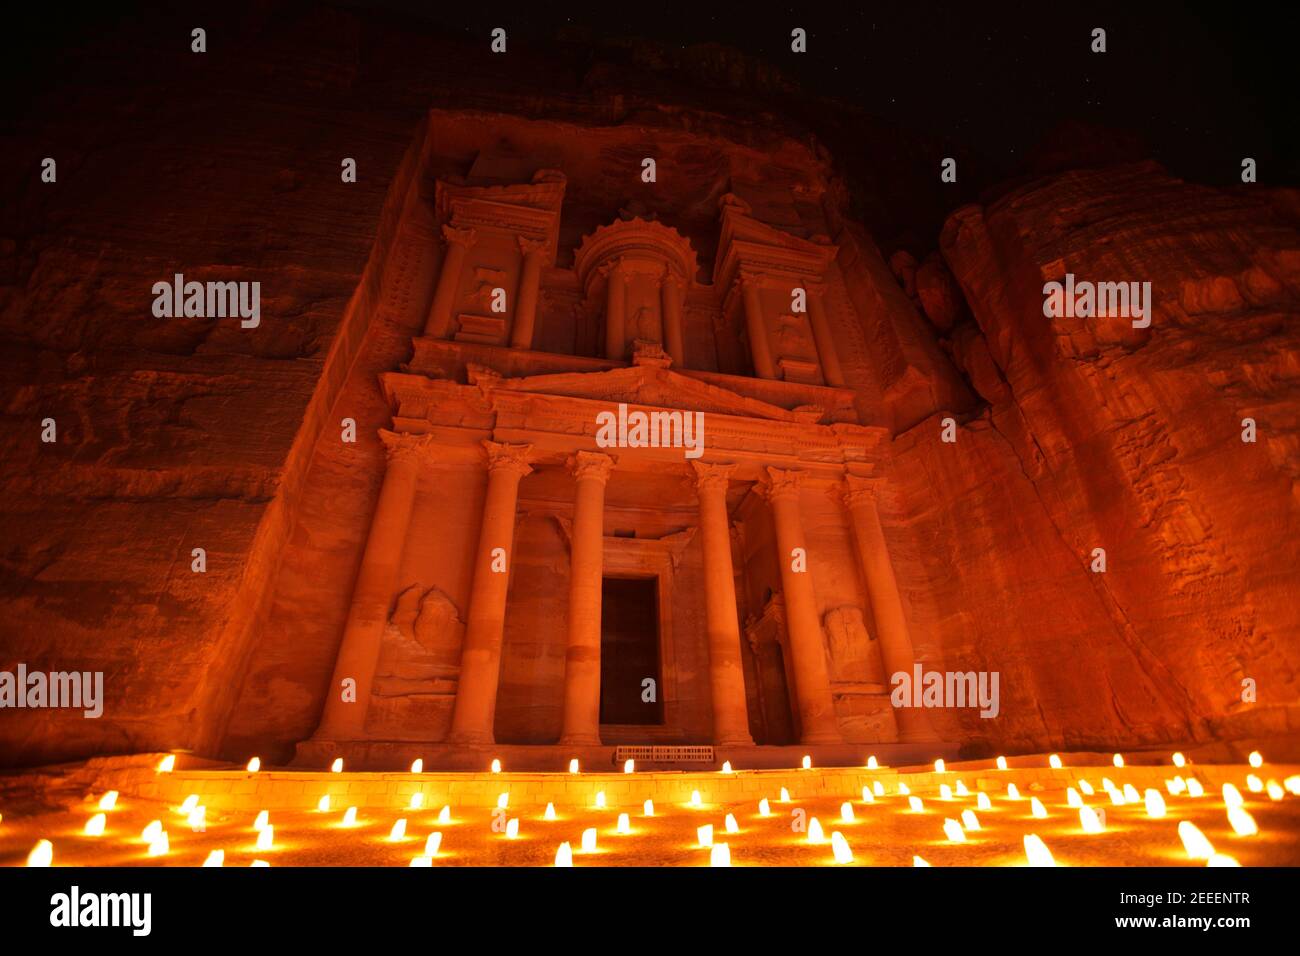 Al Khazneh (or Treasury) by night illuminated by candlelight, Petra, Jordan Stock Photo